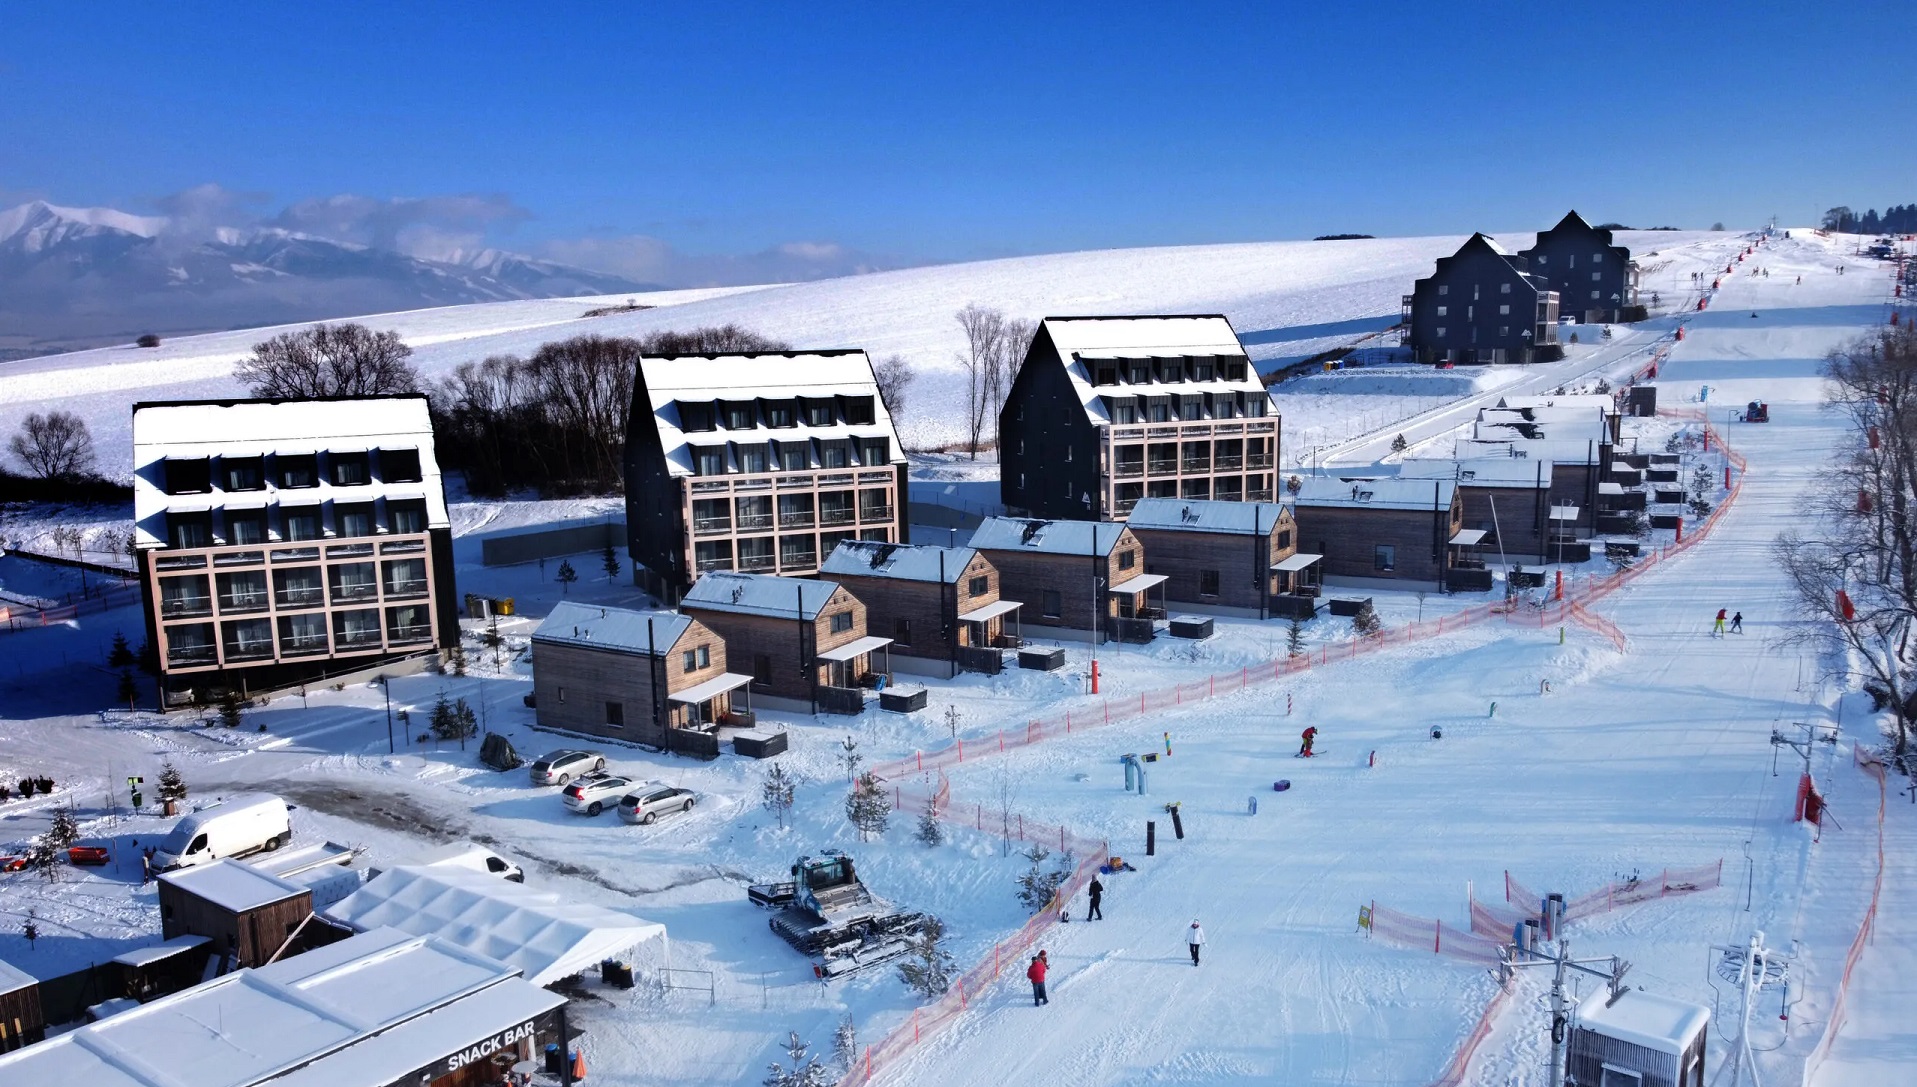 Ski Centrum Demänová